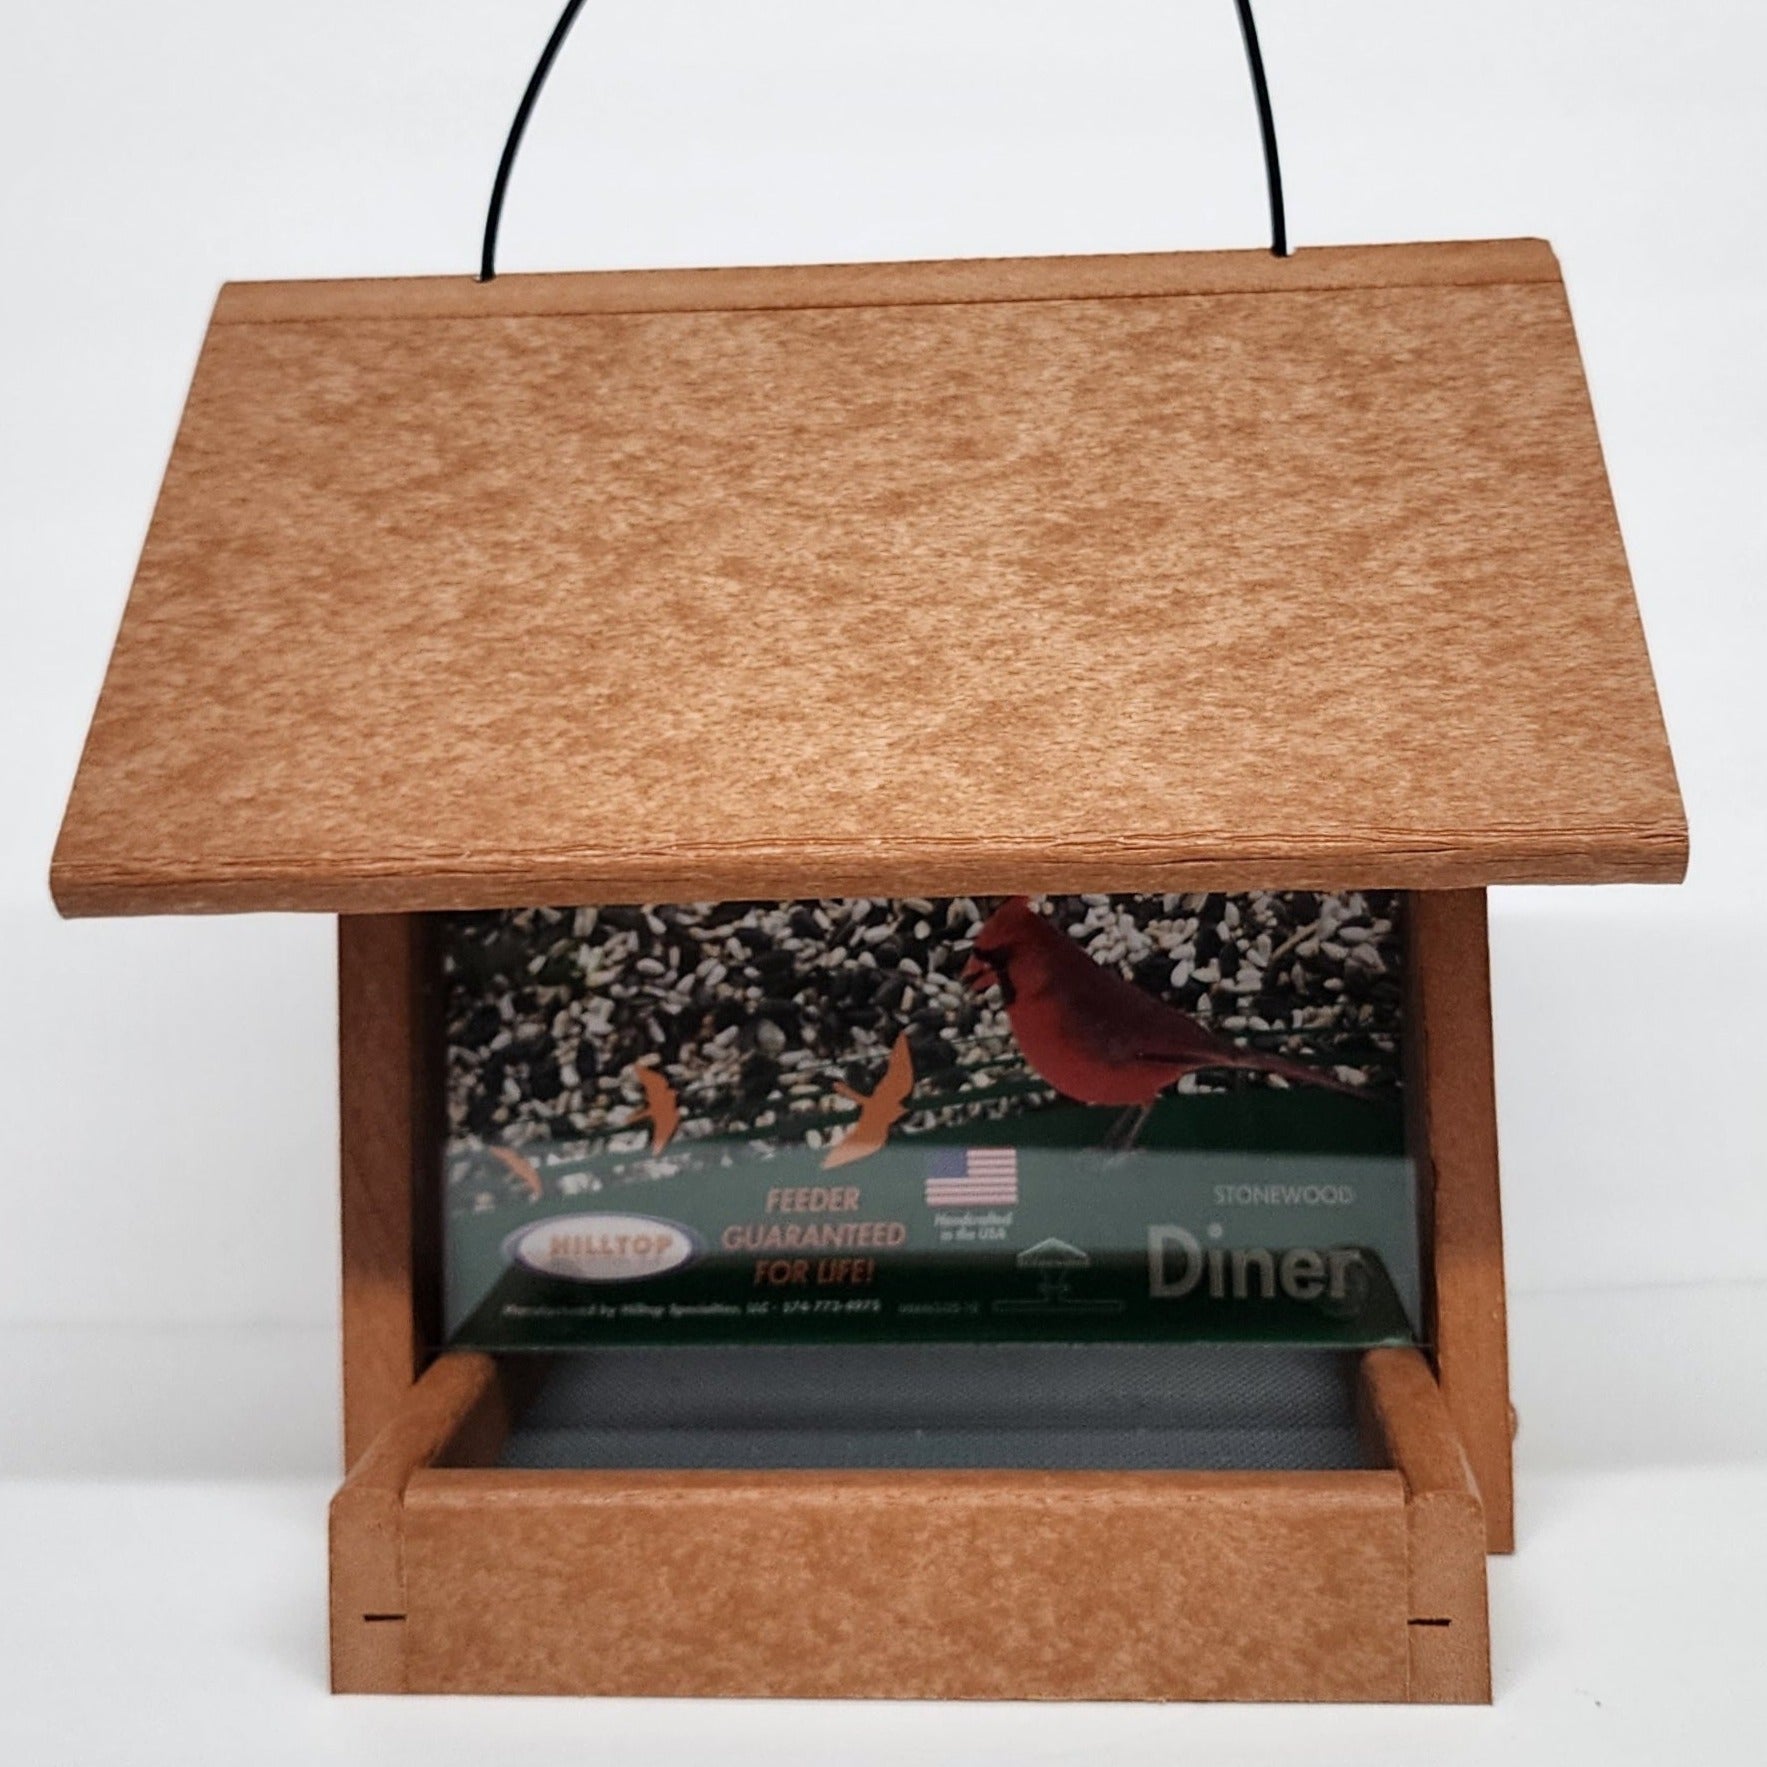 Tan colored bird feeder with silver screen base